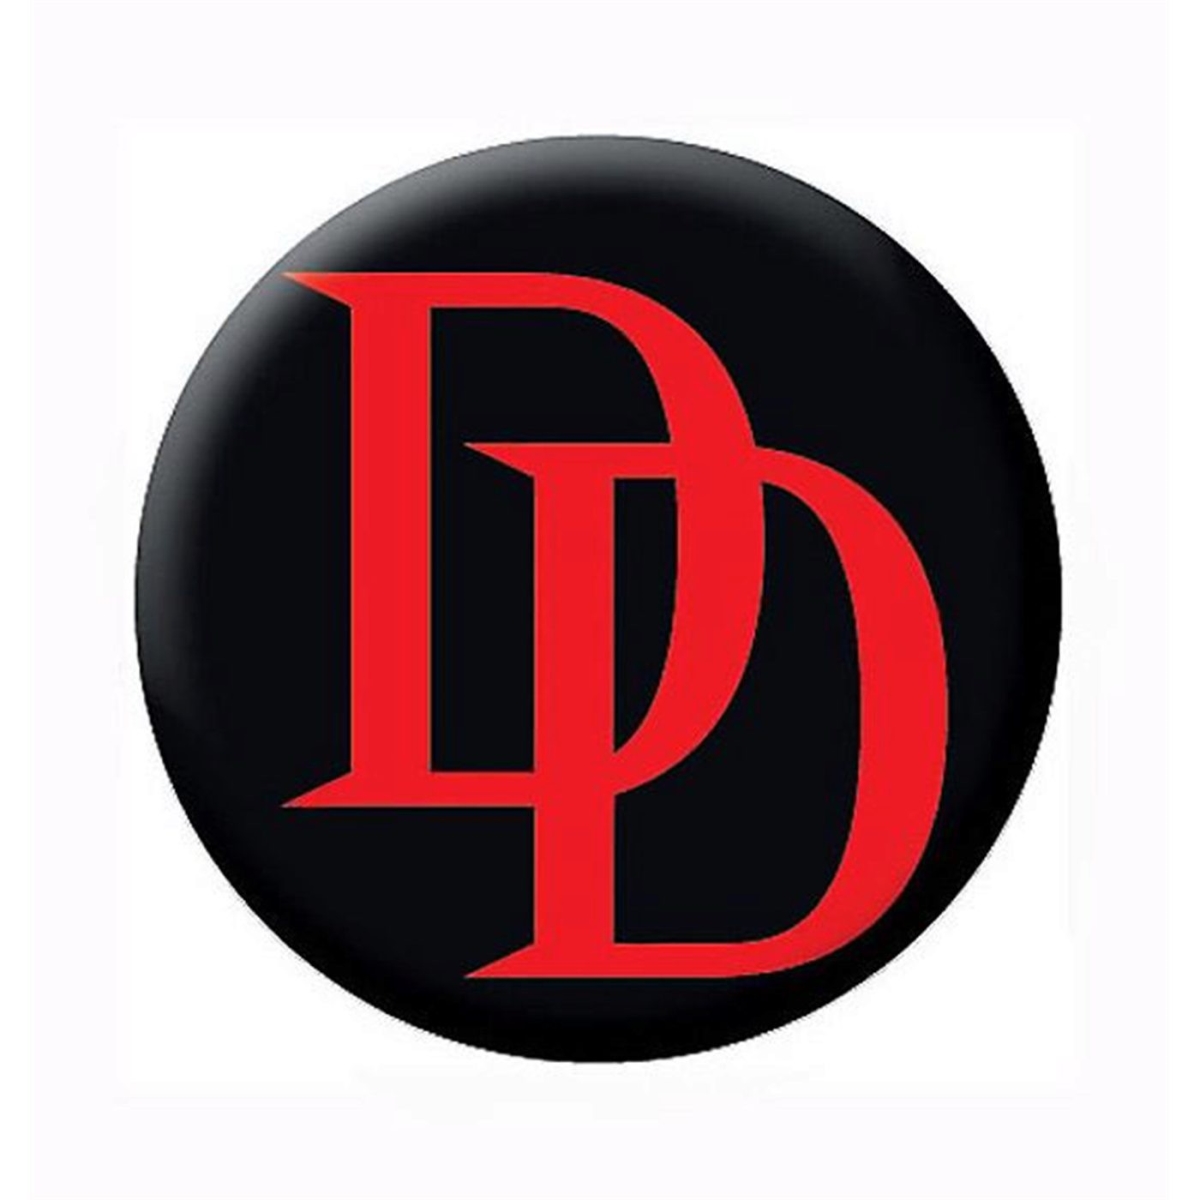 Picture of Dare Devil buttonddrdlogo Dare Devil Daredevil Red Logo Black Button